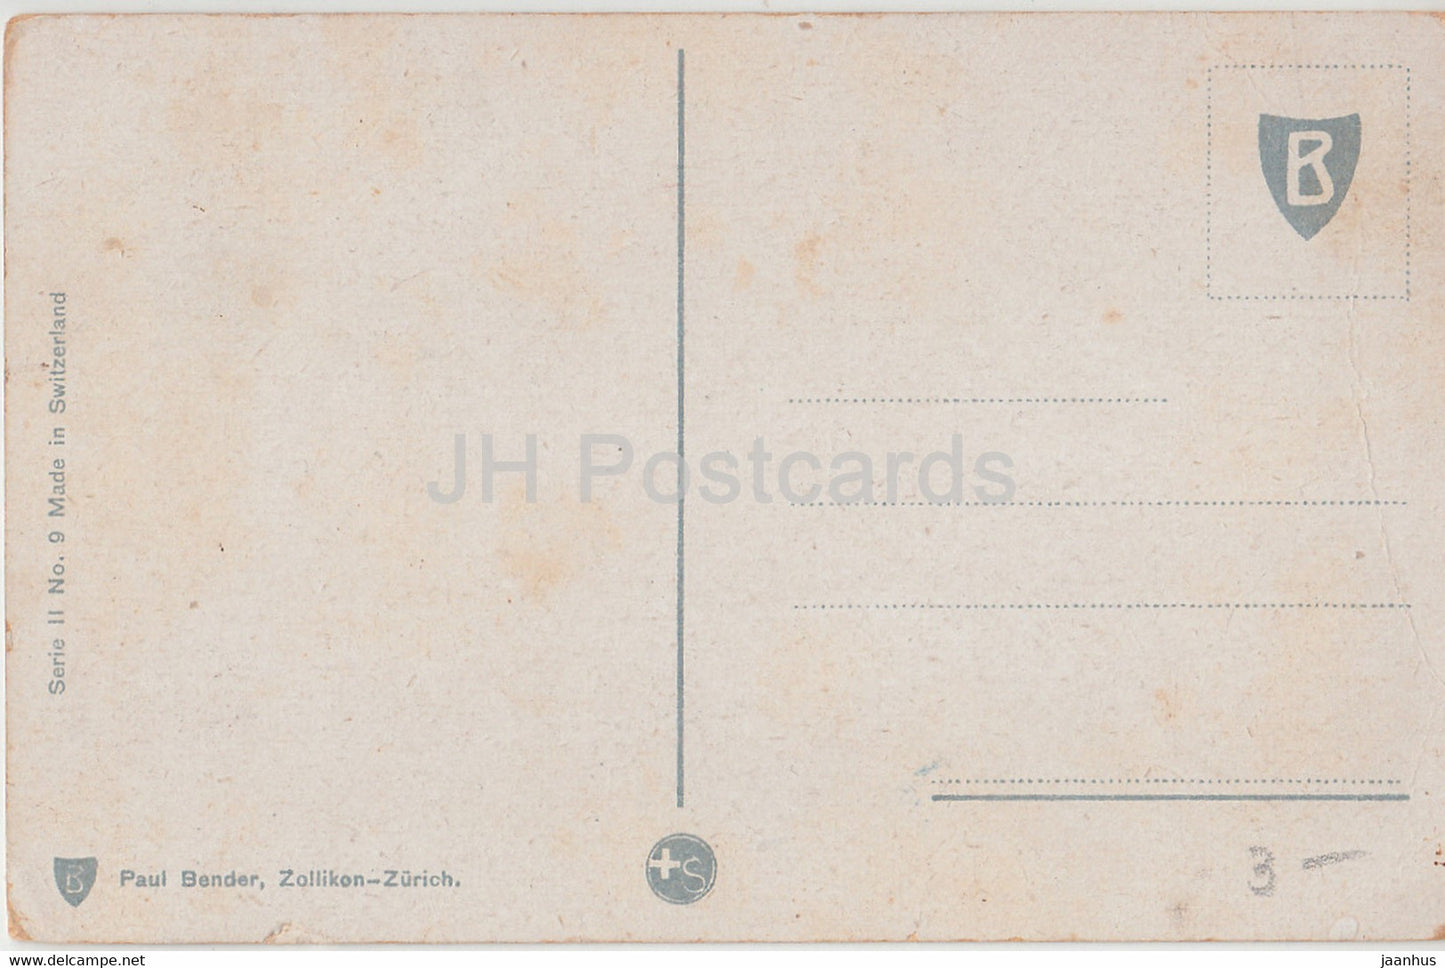 Femme avec chèvre - Serie II No 9 - Paul Bender - carte postale ancienne - Suisse - inutilisée